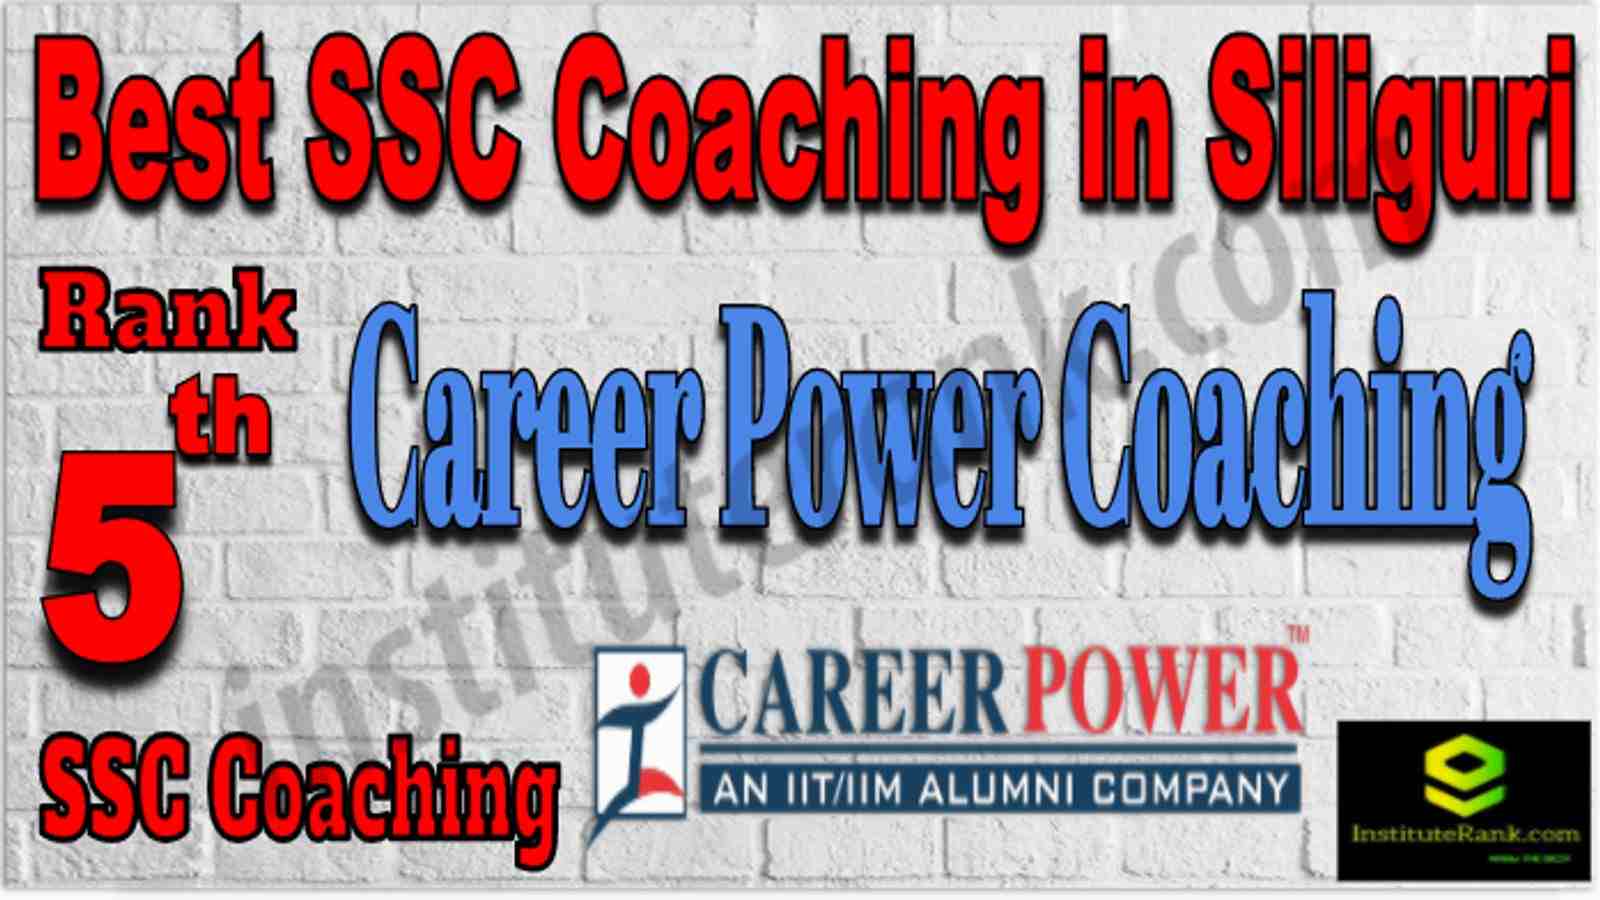 Rank 5 Best SSC Coaching in Silguri